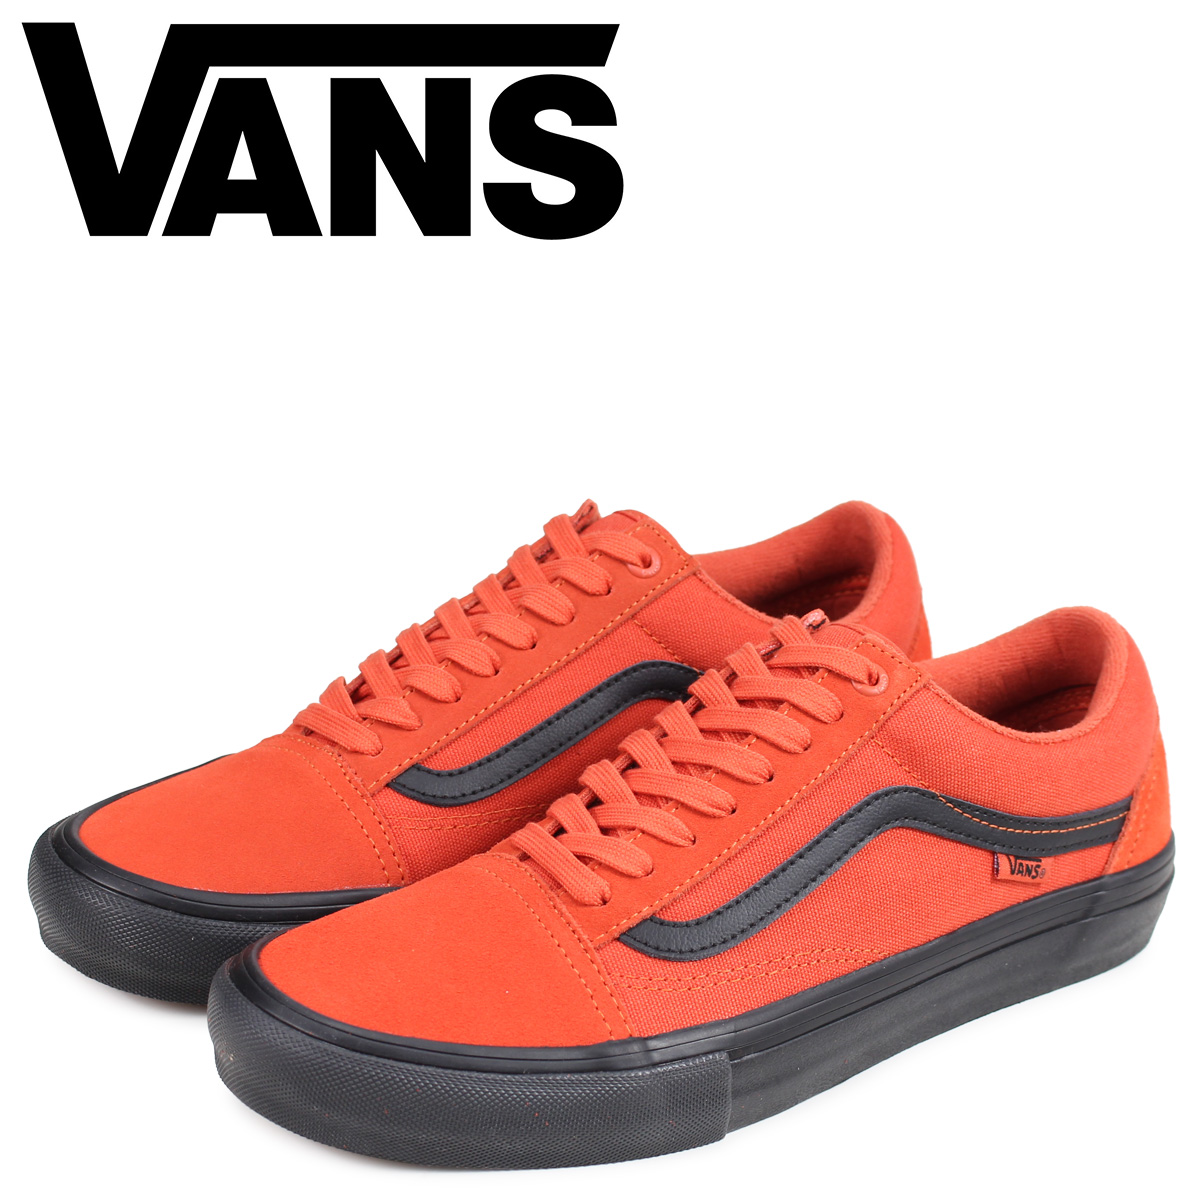 vans shoes size 15